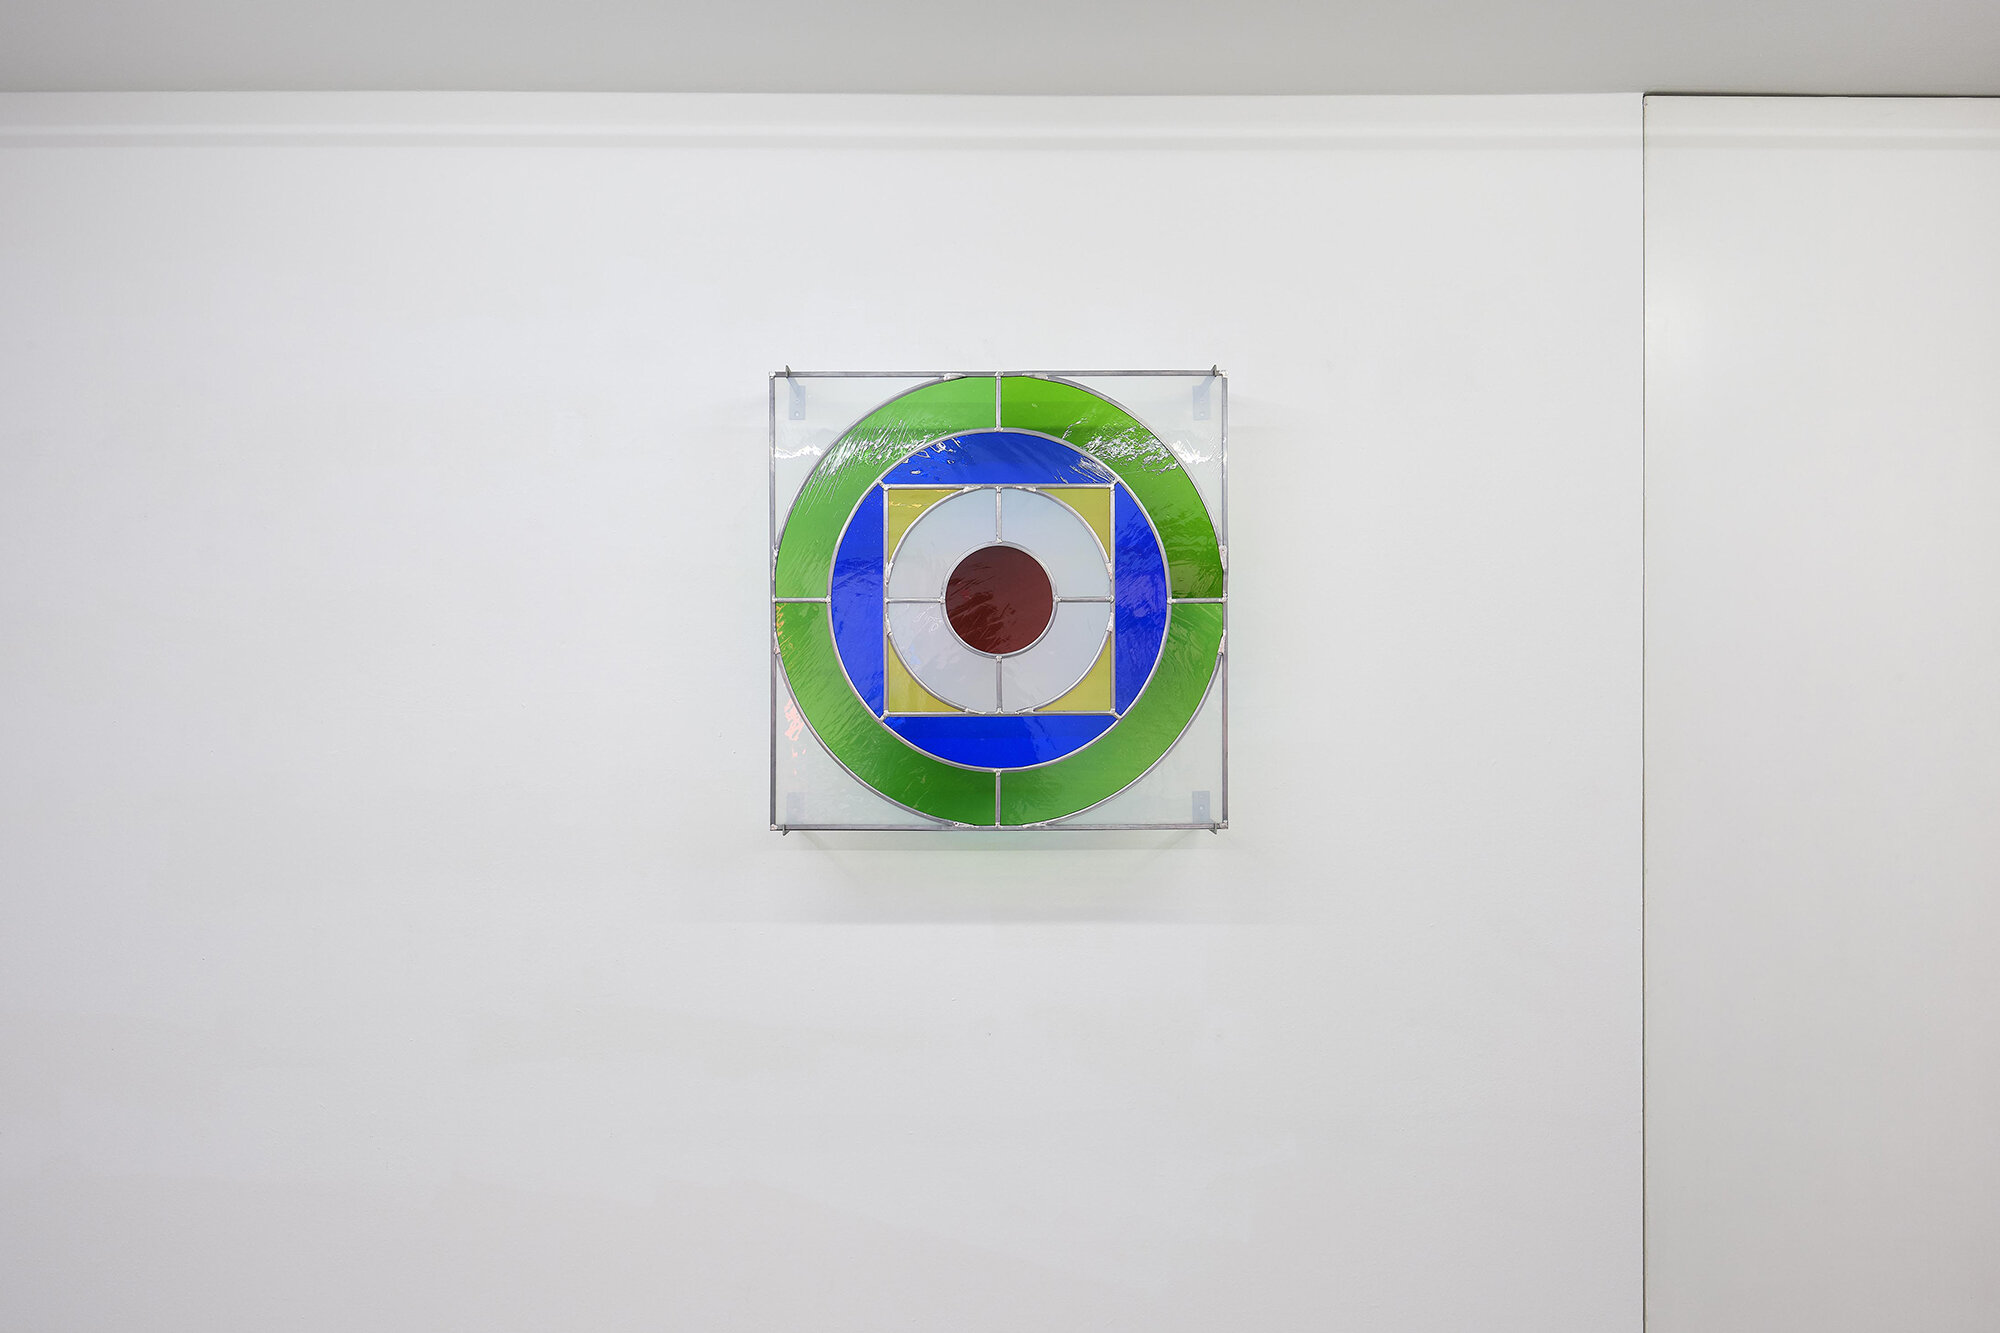 Galerie+Johann+Widauer-Exhibition-2020-Matt-Mullican-11.jpg